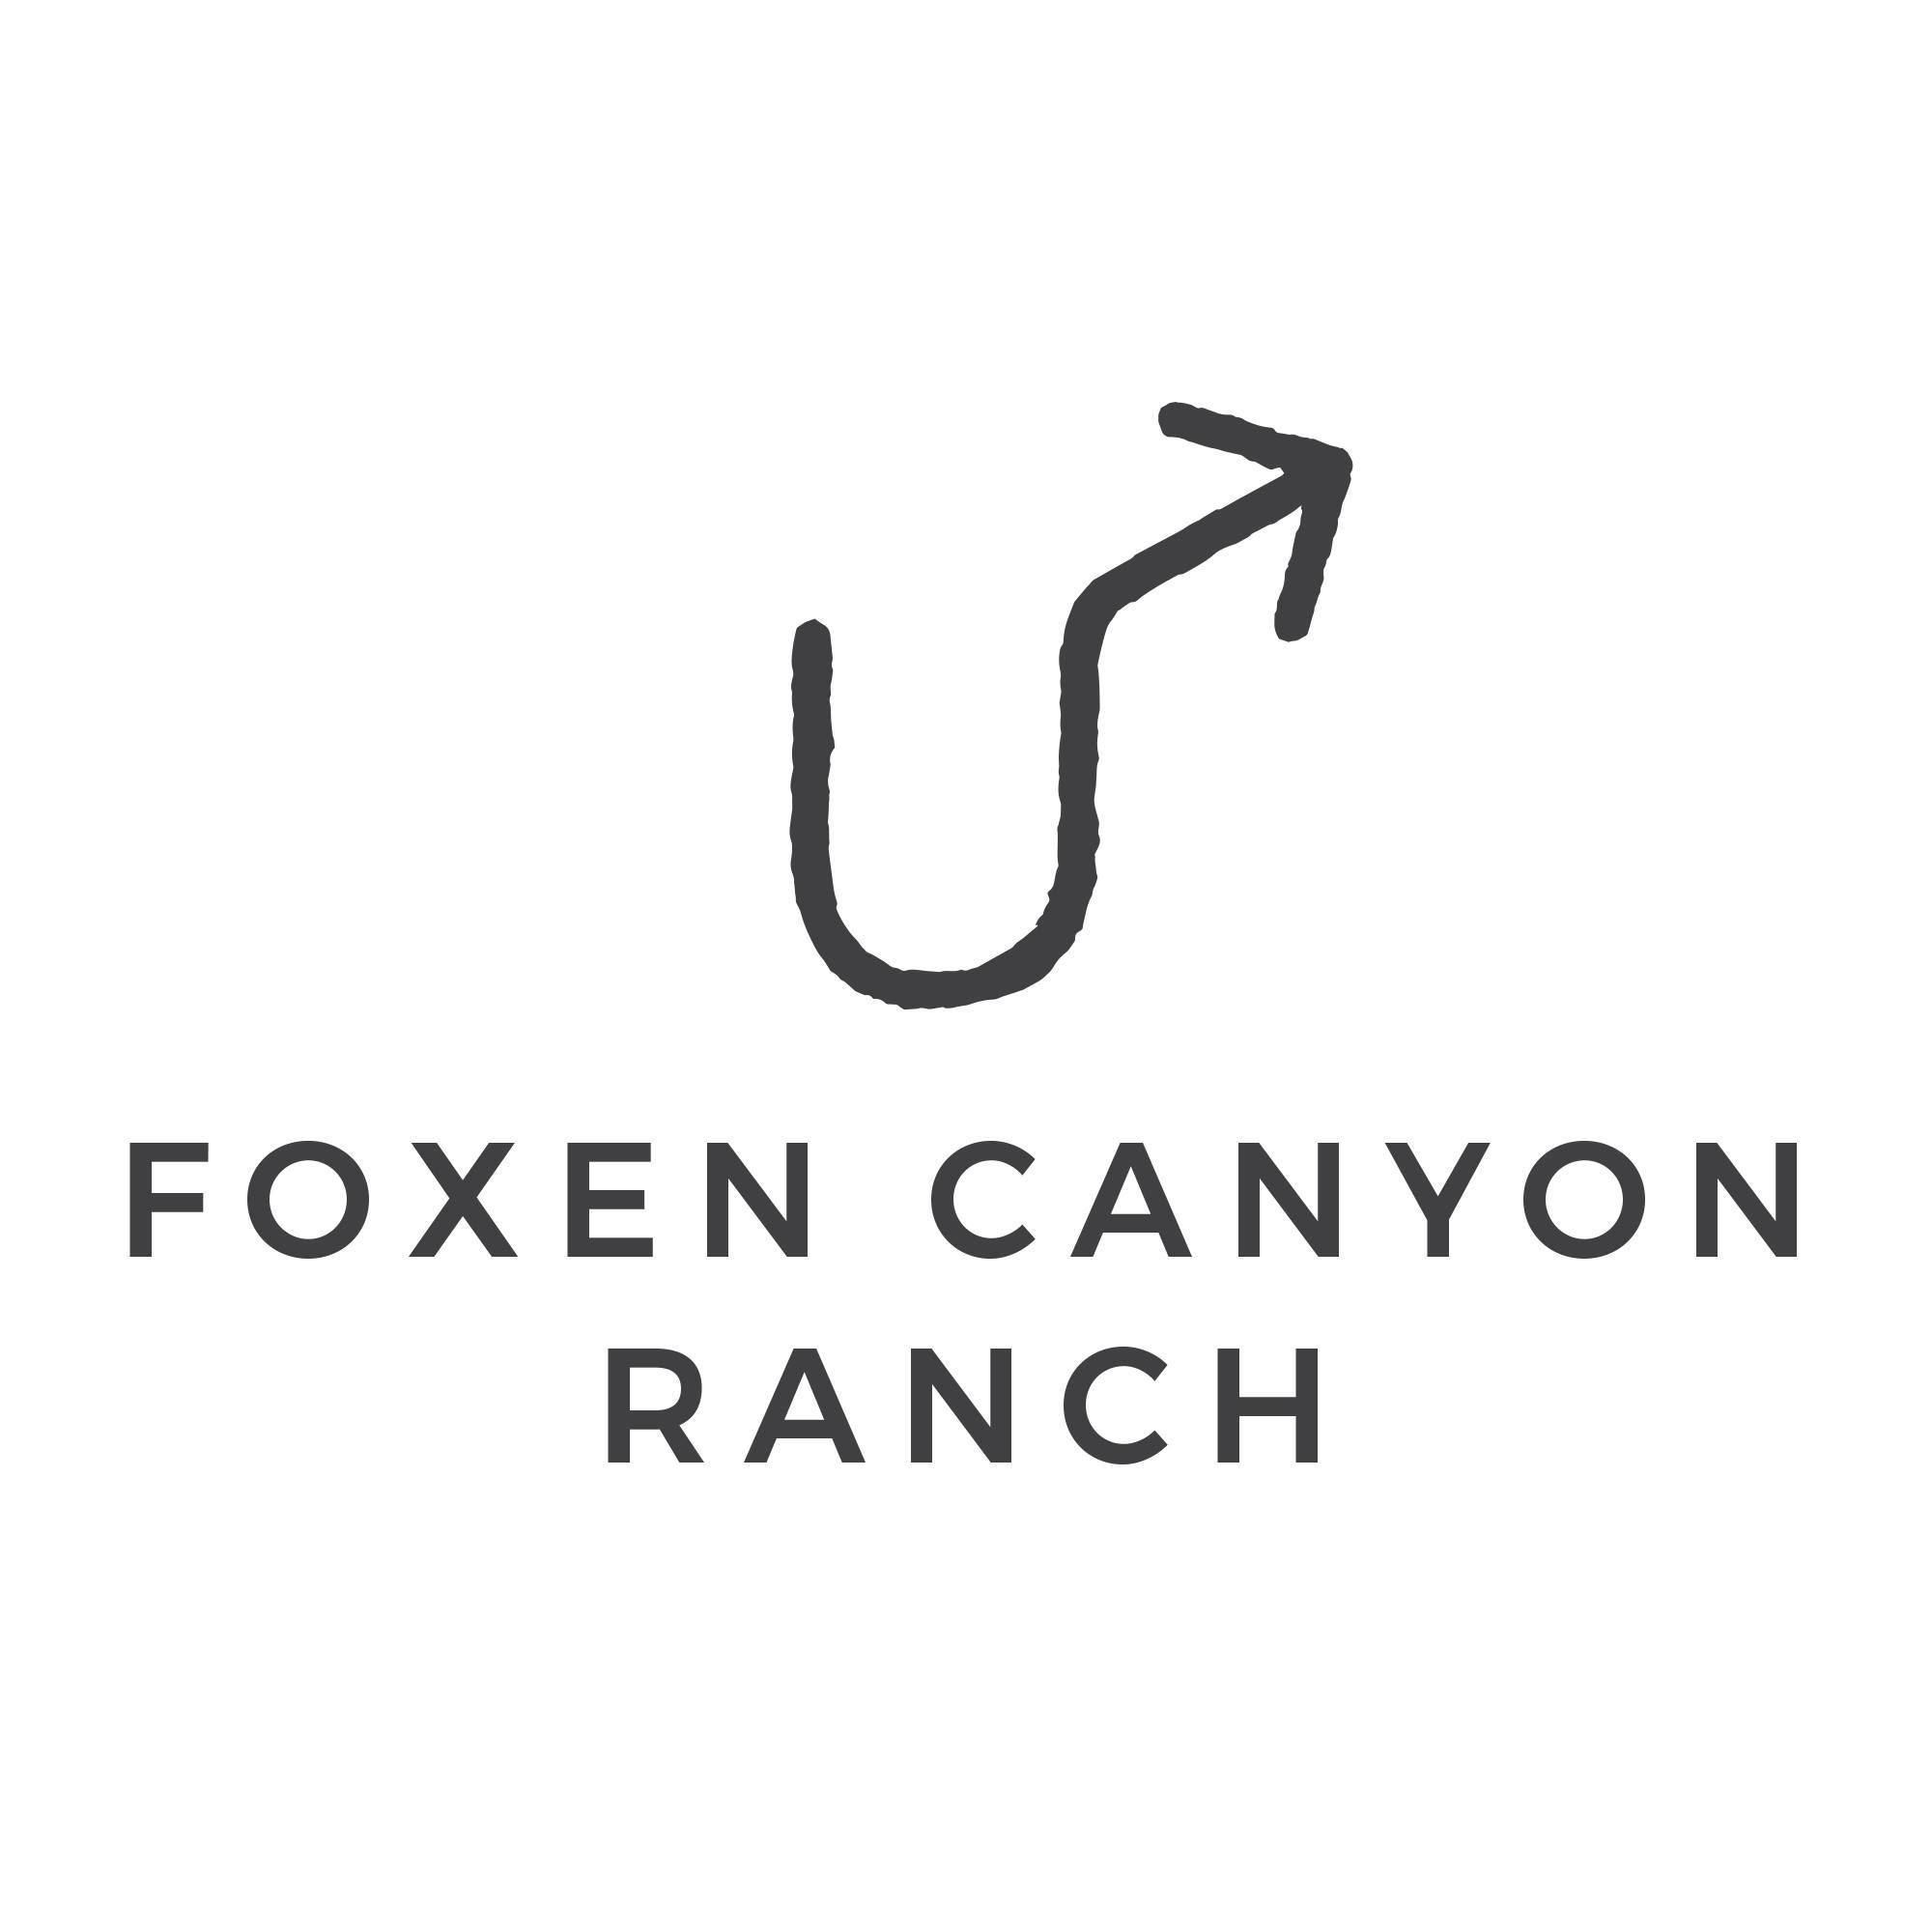 Foxen Canyon Ranch